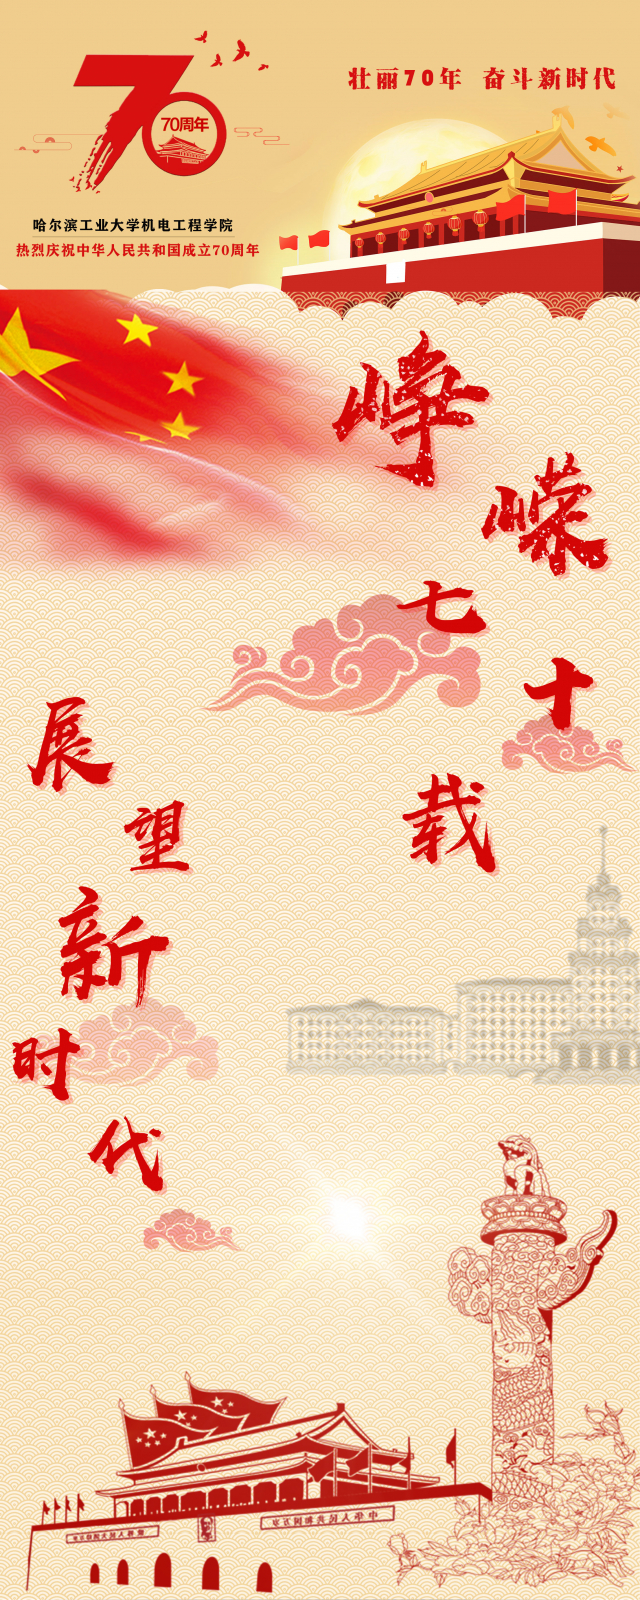 【爱国主题海报设计大赛】机电工程学院庆祝中华人民共和国成立70周年